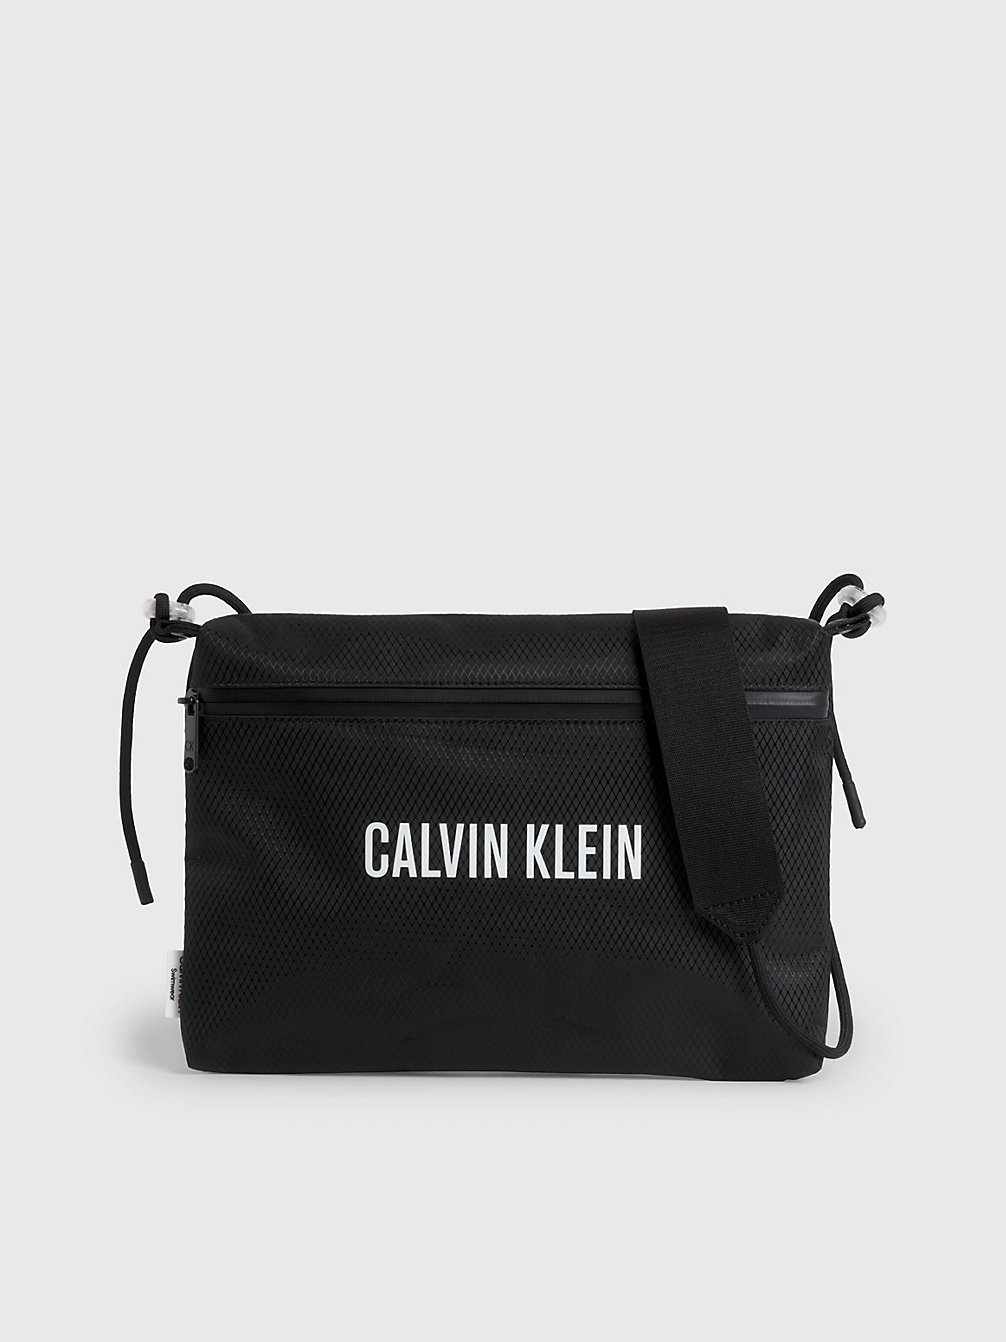 PVH BLACK Sac En Bandoulière De Plage undefined unisex Calvin Klein